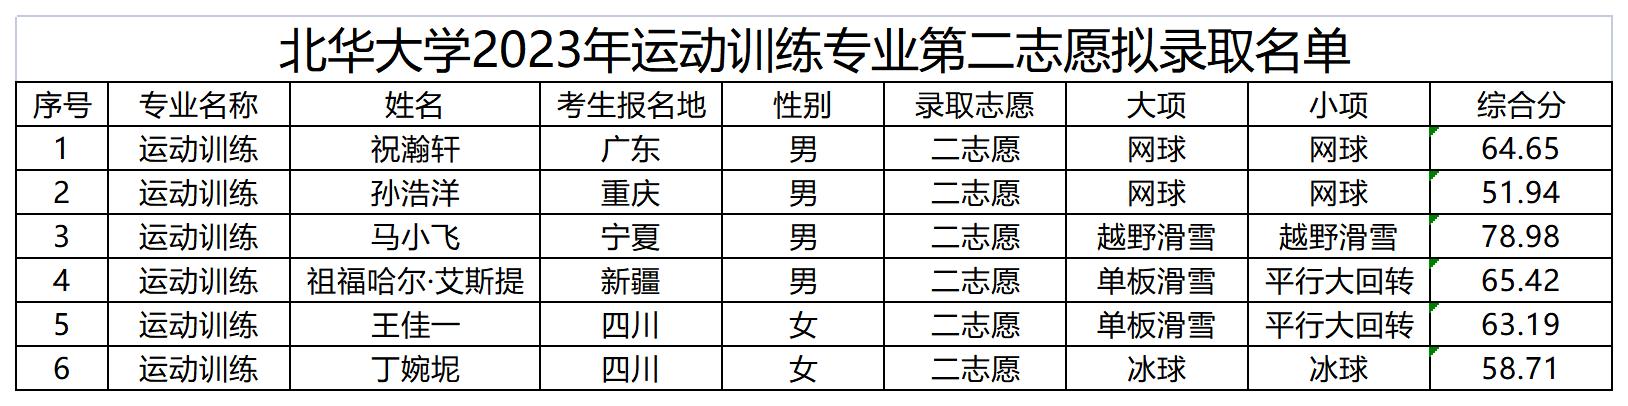 北华大学2023年运动训练专业第二志愿拟录取名单_Sheet1.jpg